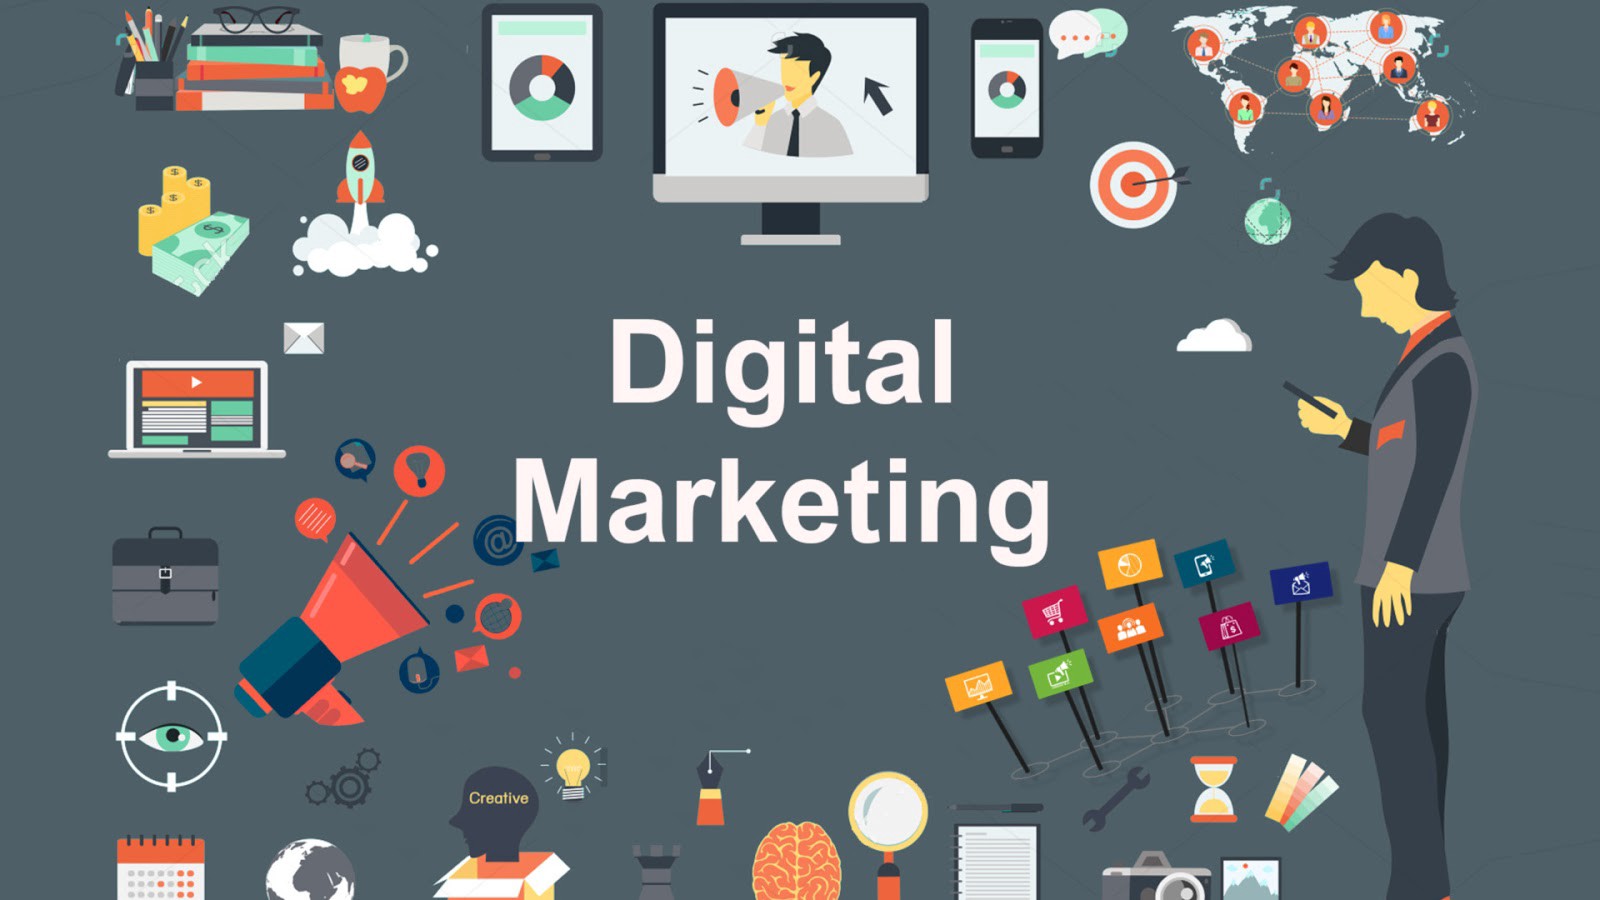 Digital Marketing Agency for Growth